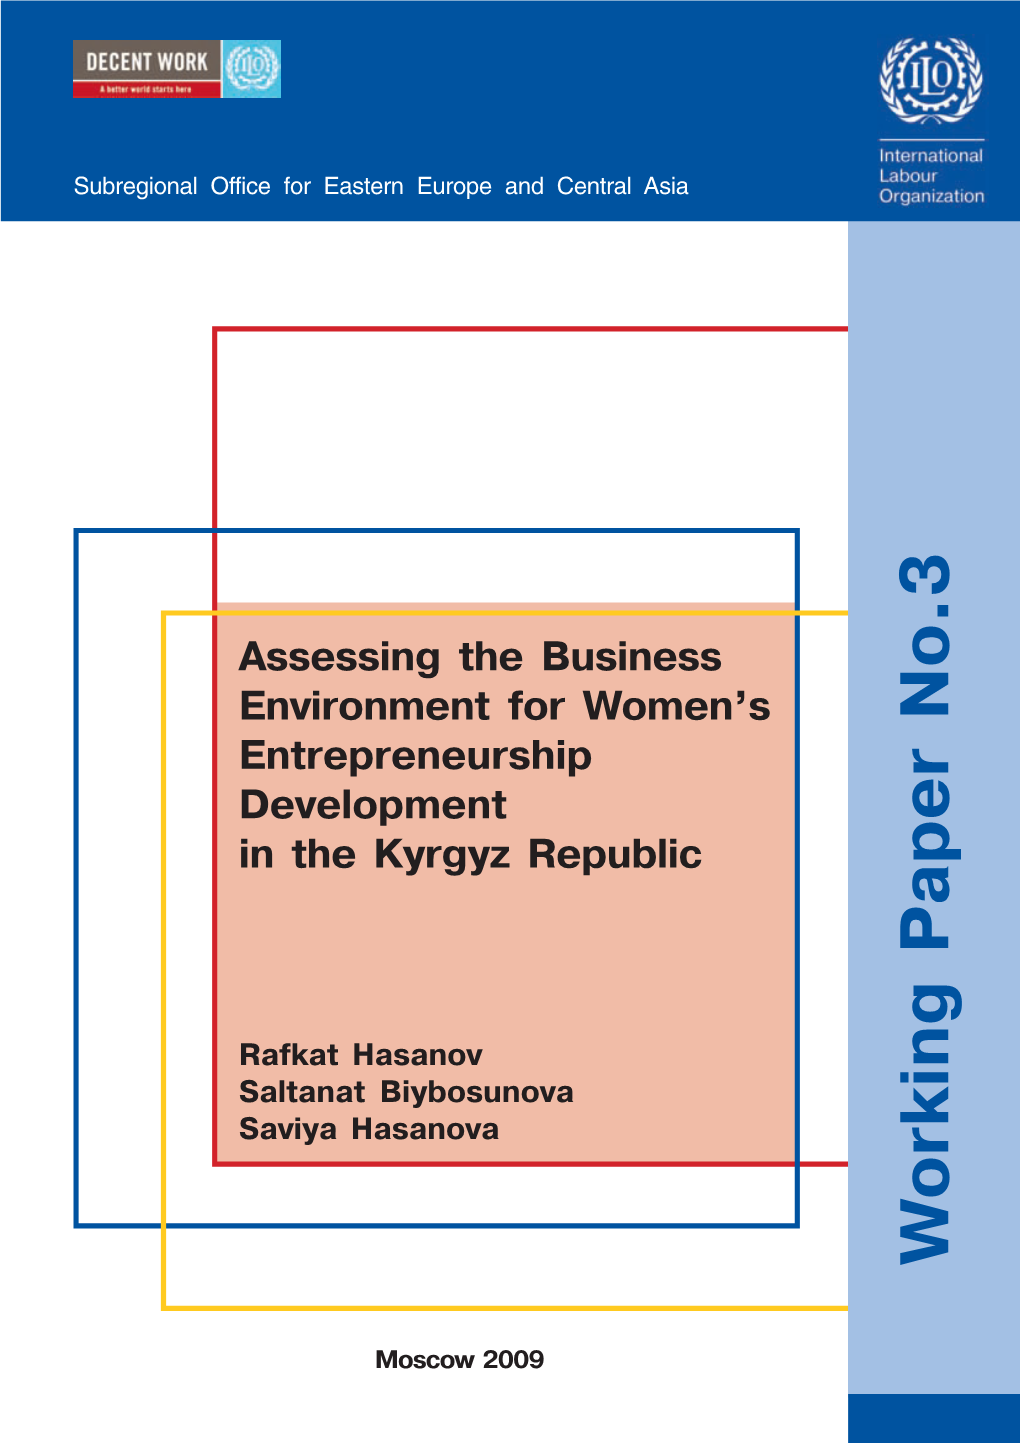 Assessing the Business Environment for Women's Entrepreneurship Development in the Republic of Kyrgyzstan